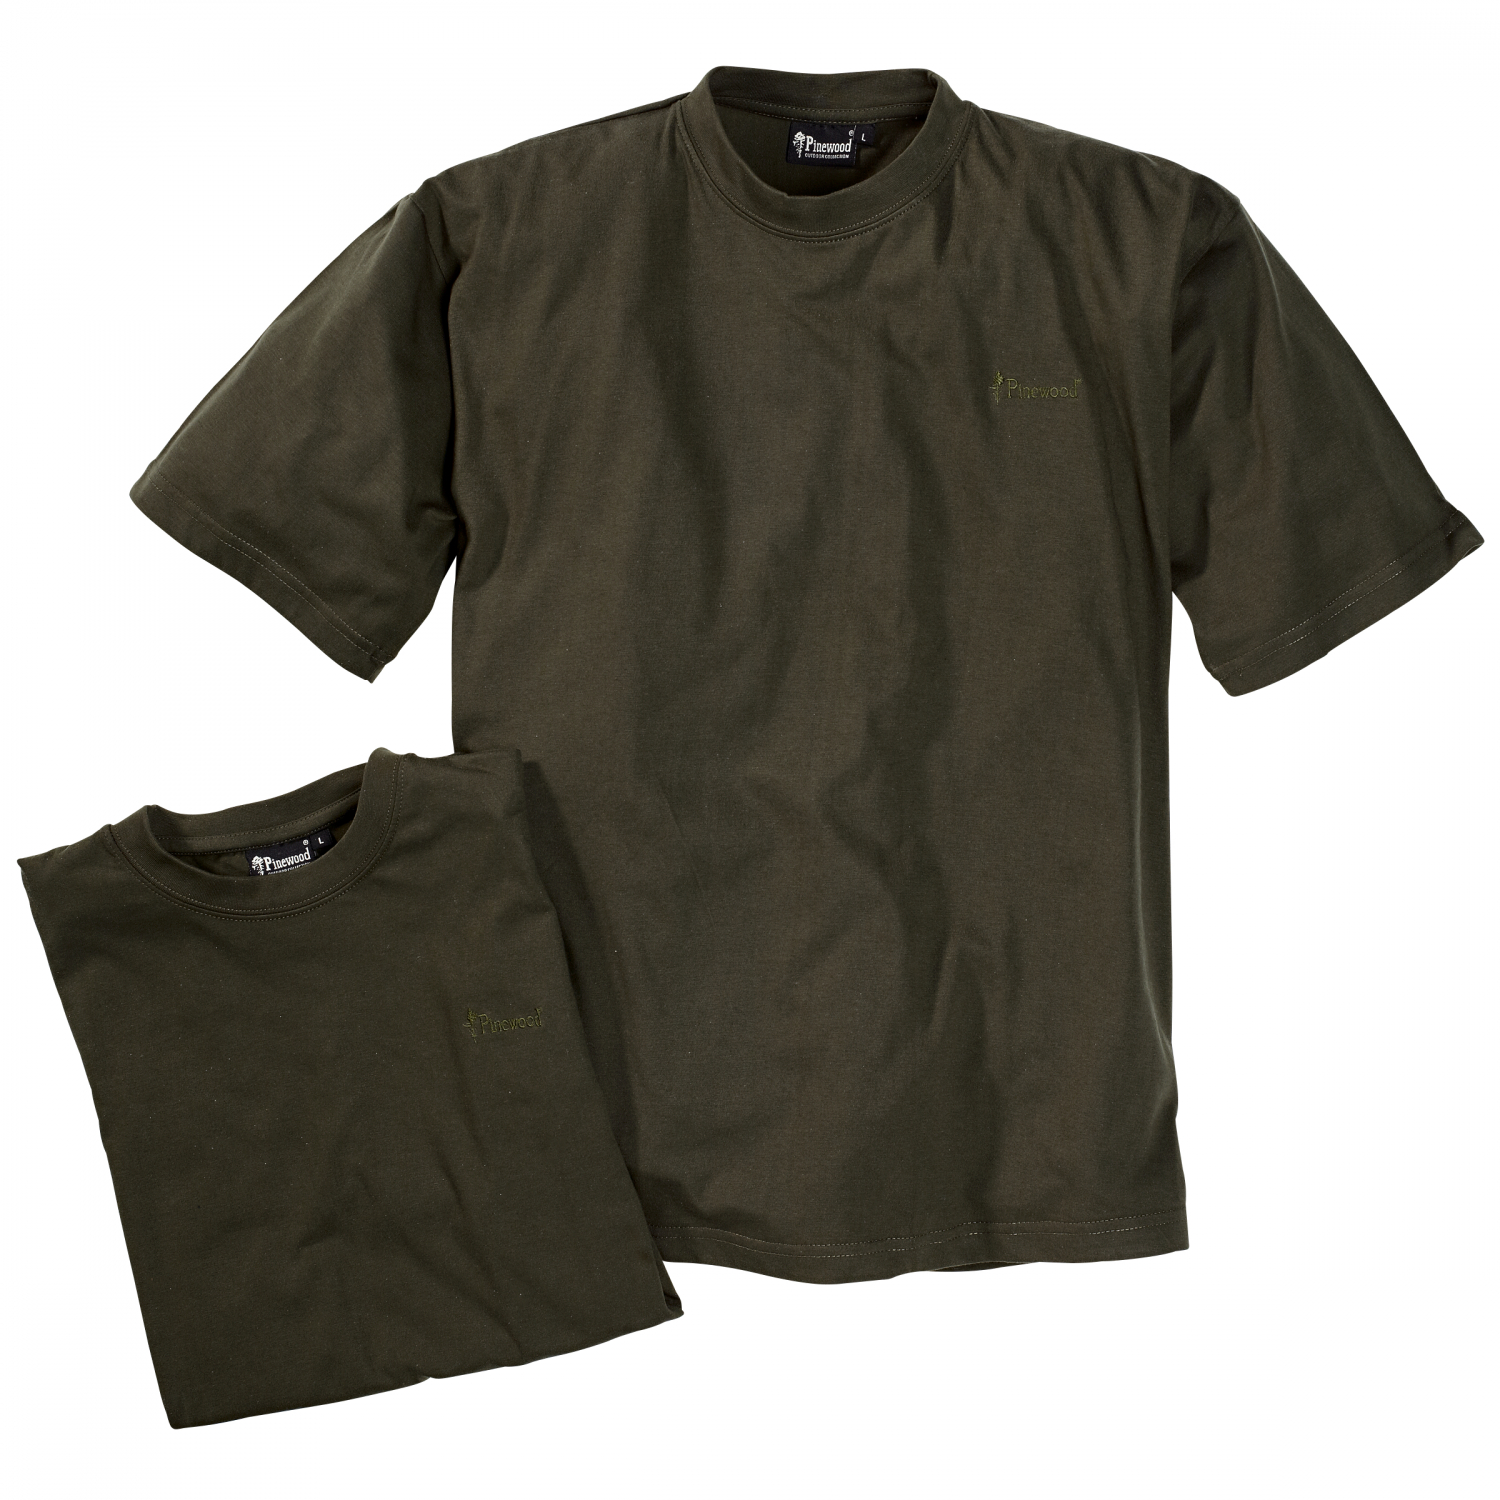 Pinewood Men's T-Shirt (Set of 2) Sz. L 